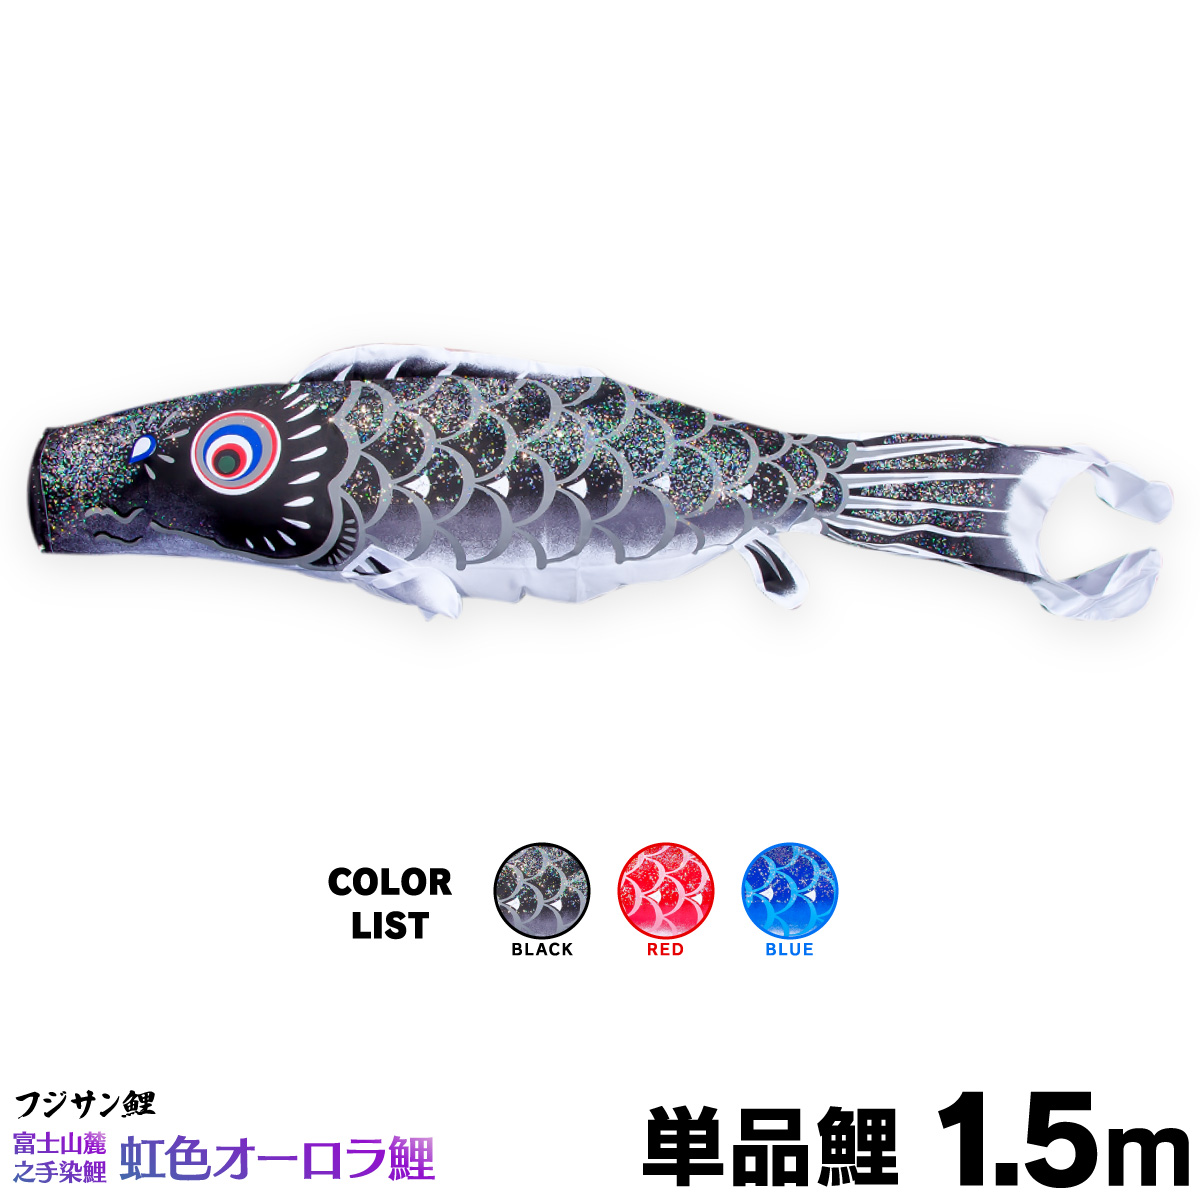 こいのぼり 鯉のぼり 子鯉 単品の鯉のぼり販売 虹色オーロラ鯉 格安 単品鯉 1.5m 値引き 単品